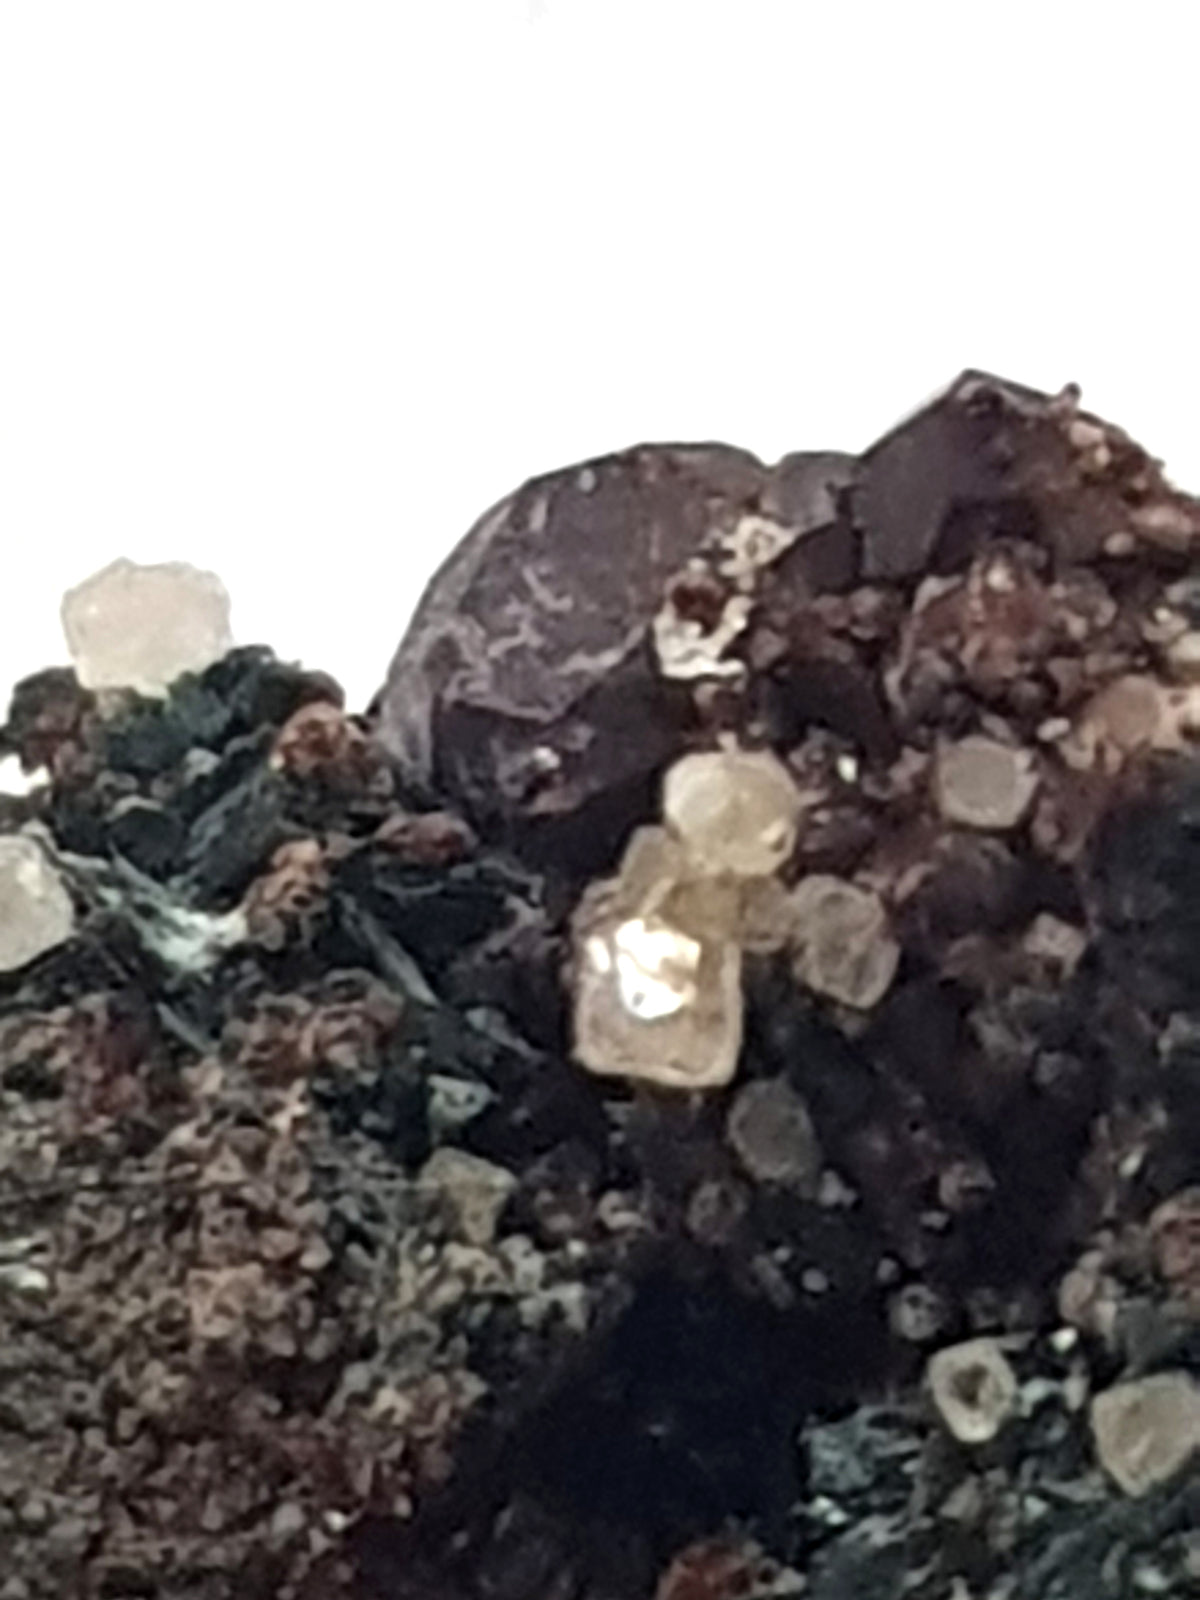 scheelite crystals, antinolite crystals, grossullar